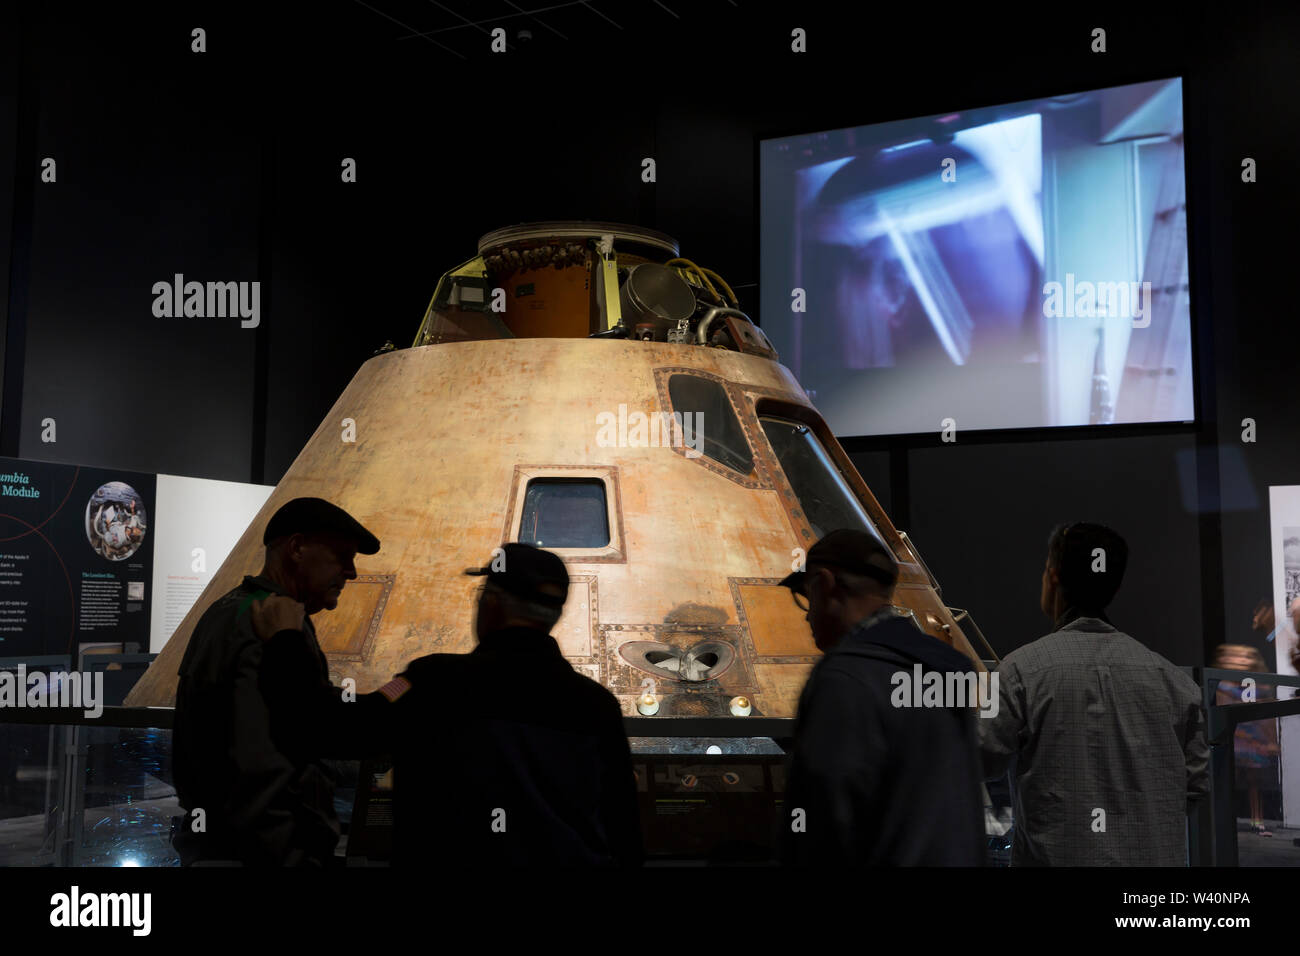 Le module de commande Columbia sur l'affichage pendant la "Destination Lune" exposition au Musée de l'aviation à Seattle, Washington le 18 juillet 2019. L'exposition, présentée en partenariat avec le Smithsonian Institution, célèbre la mission Apollo 11 au cours de la 50e anniversaire de l'alunissage. Banque D'Images